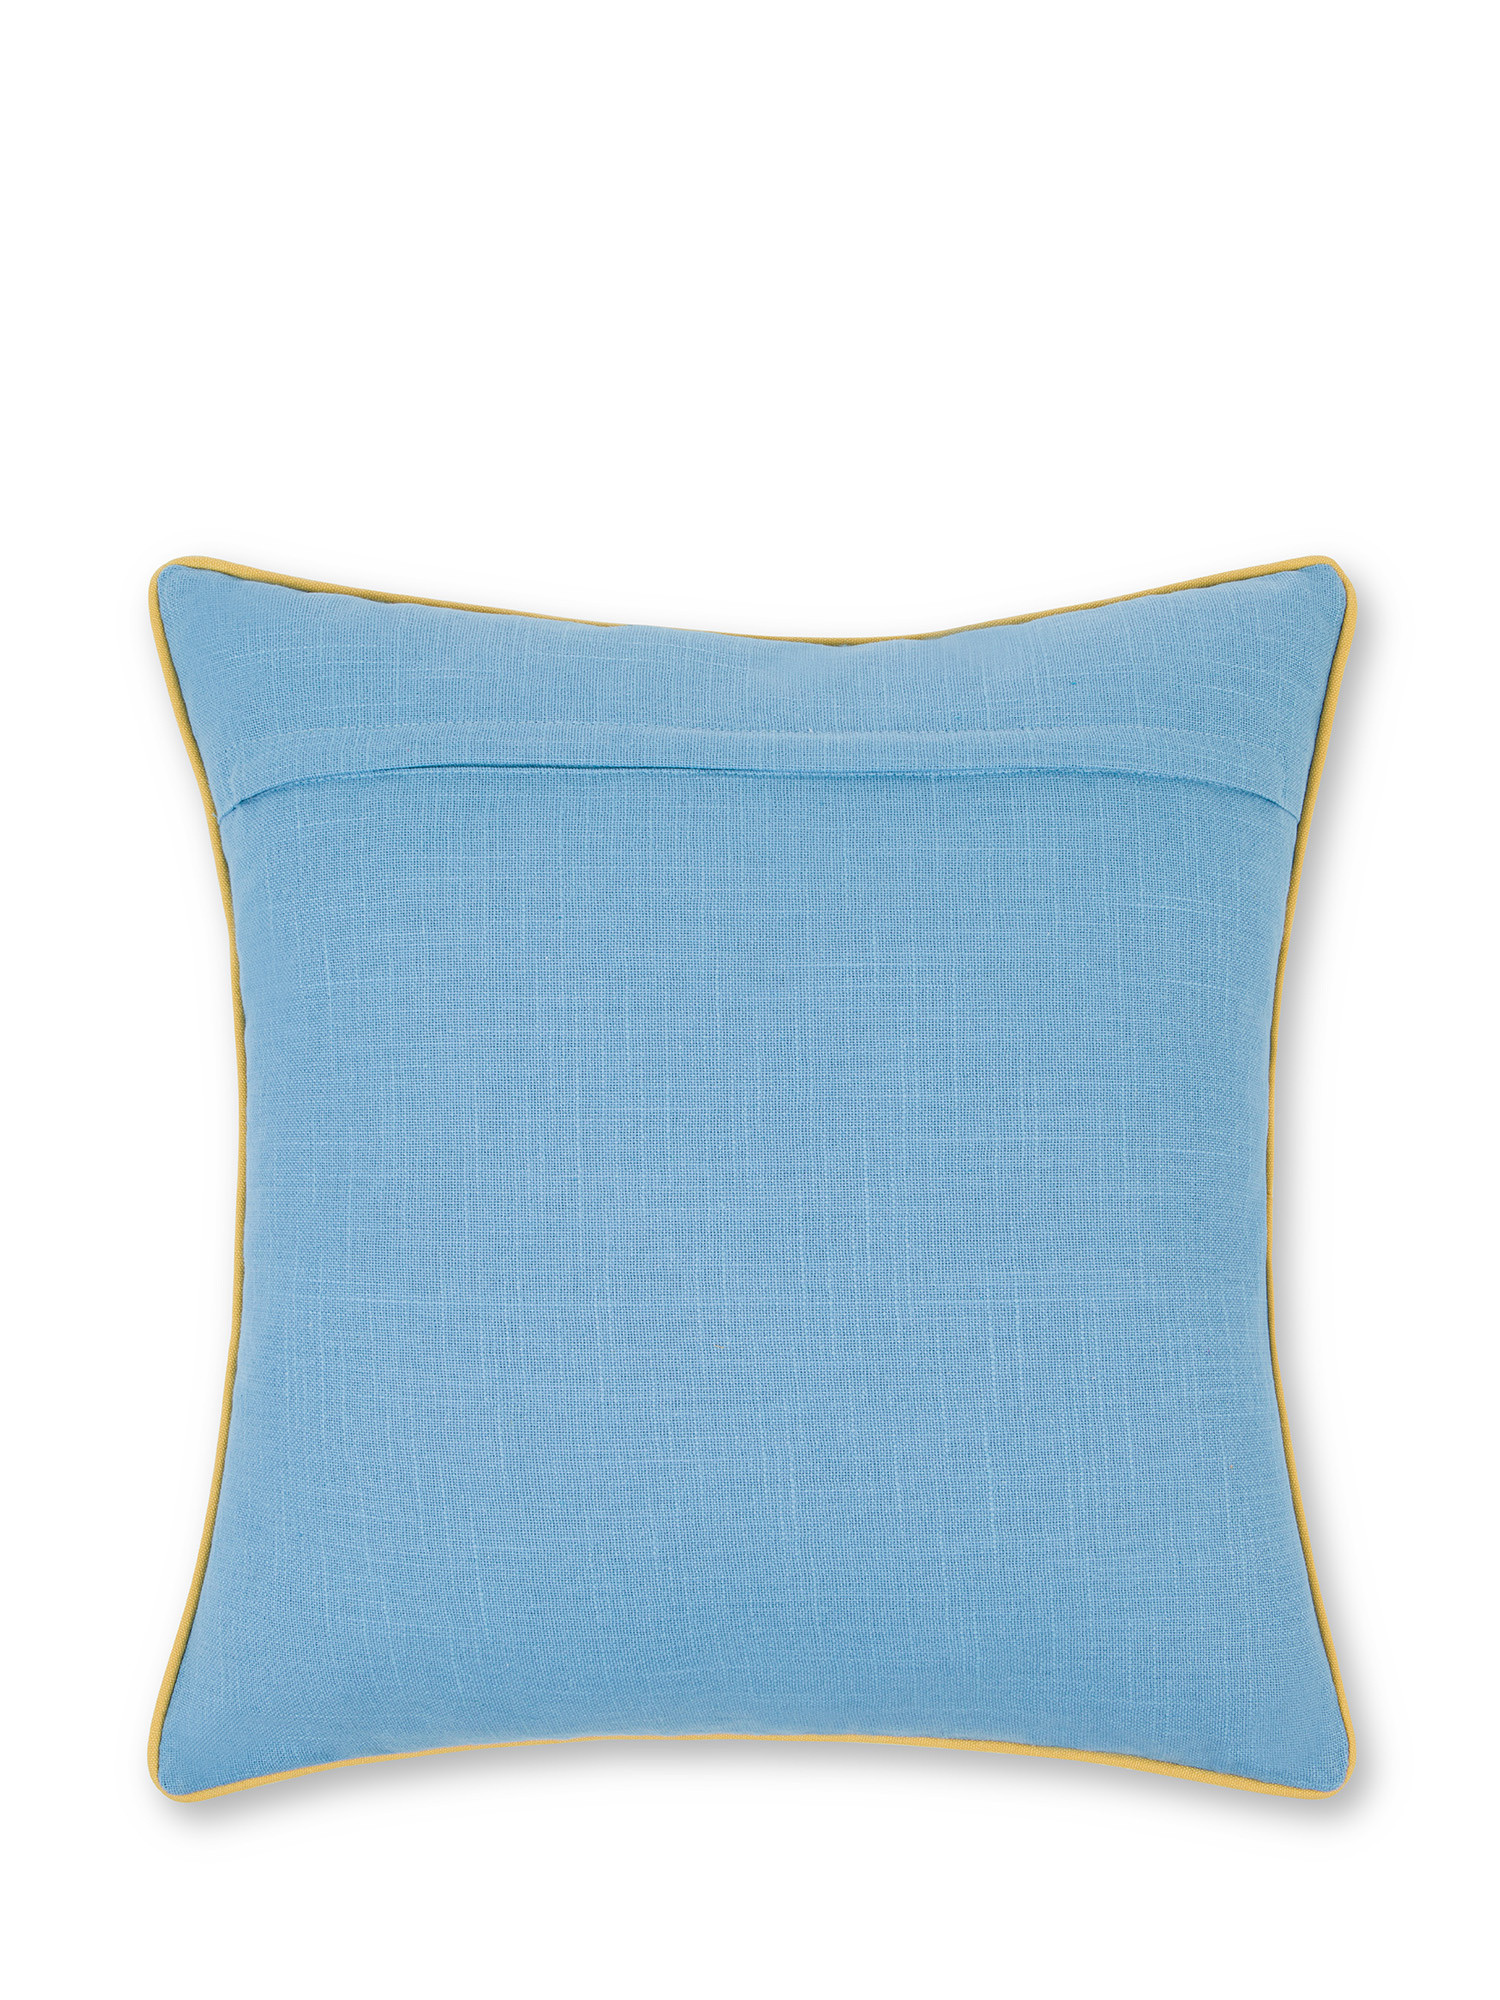 Cuscino cotone con ricamo 45x45cm, Azzurro, large image number 1